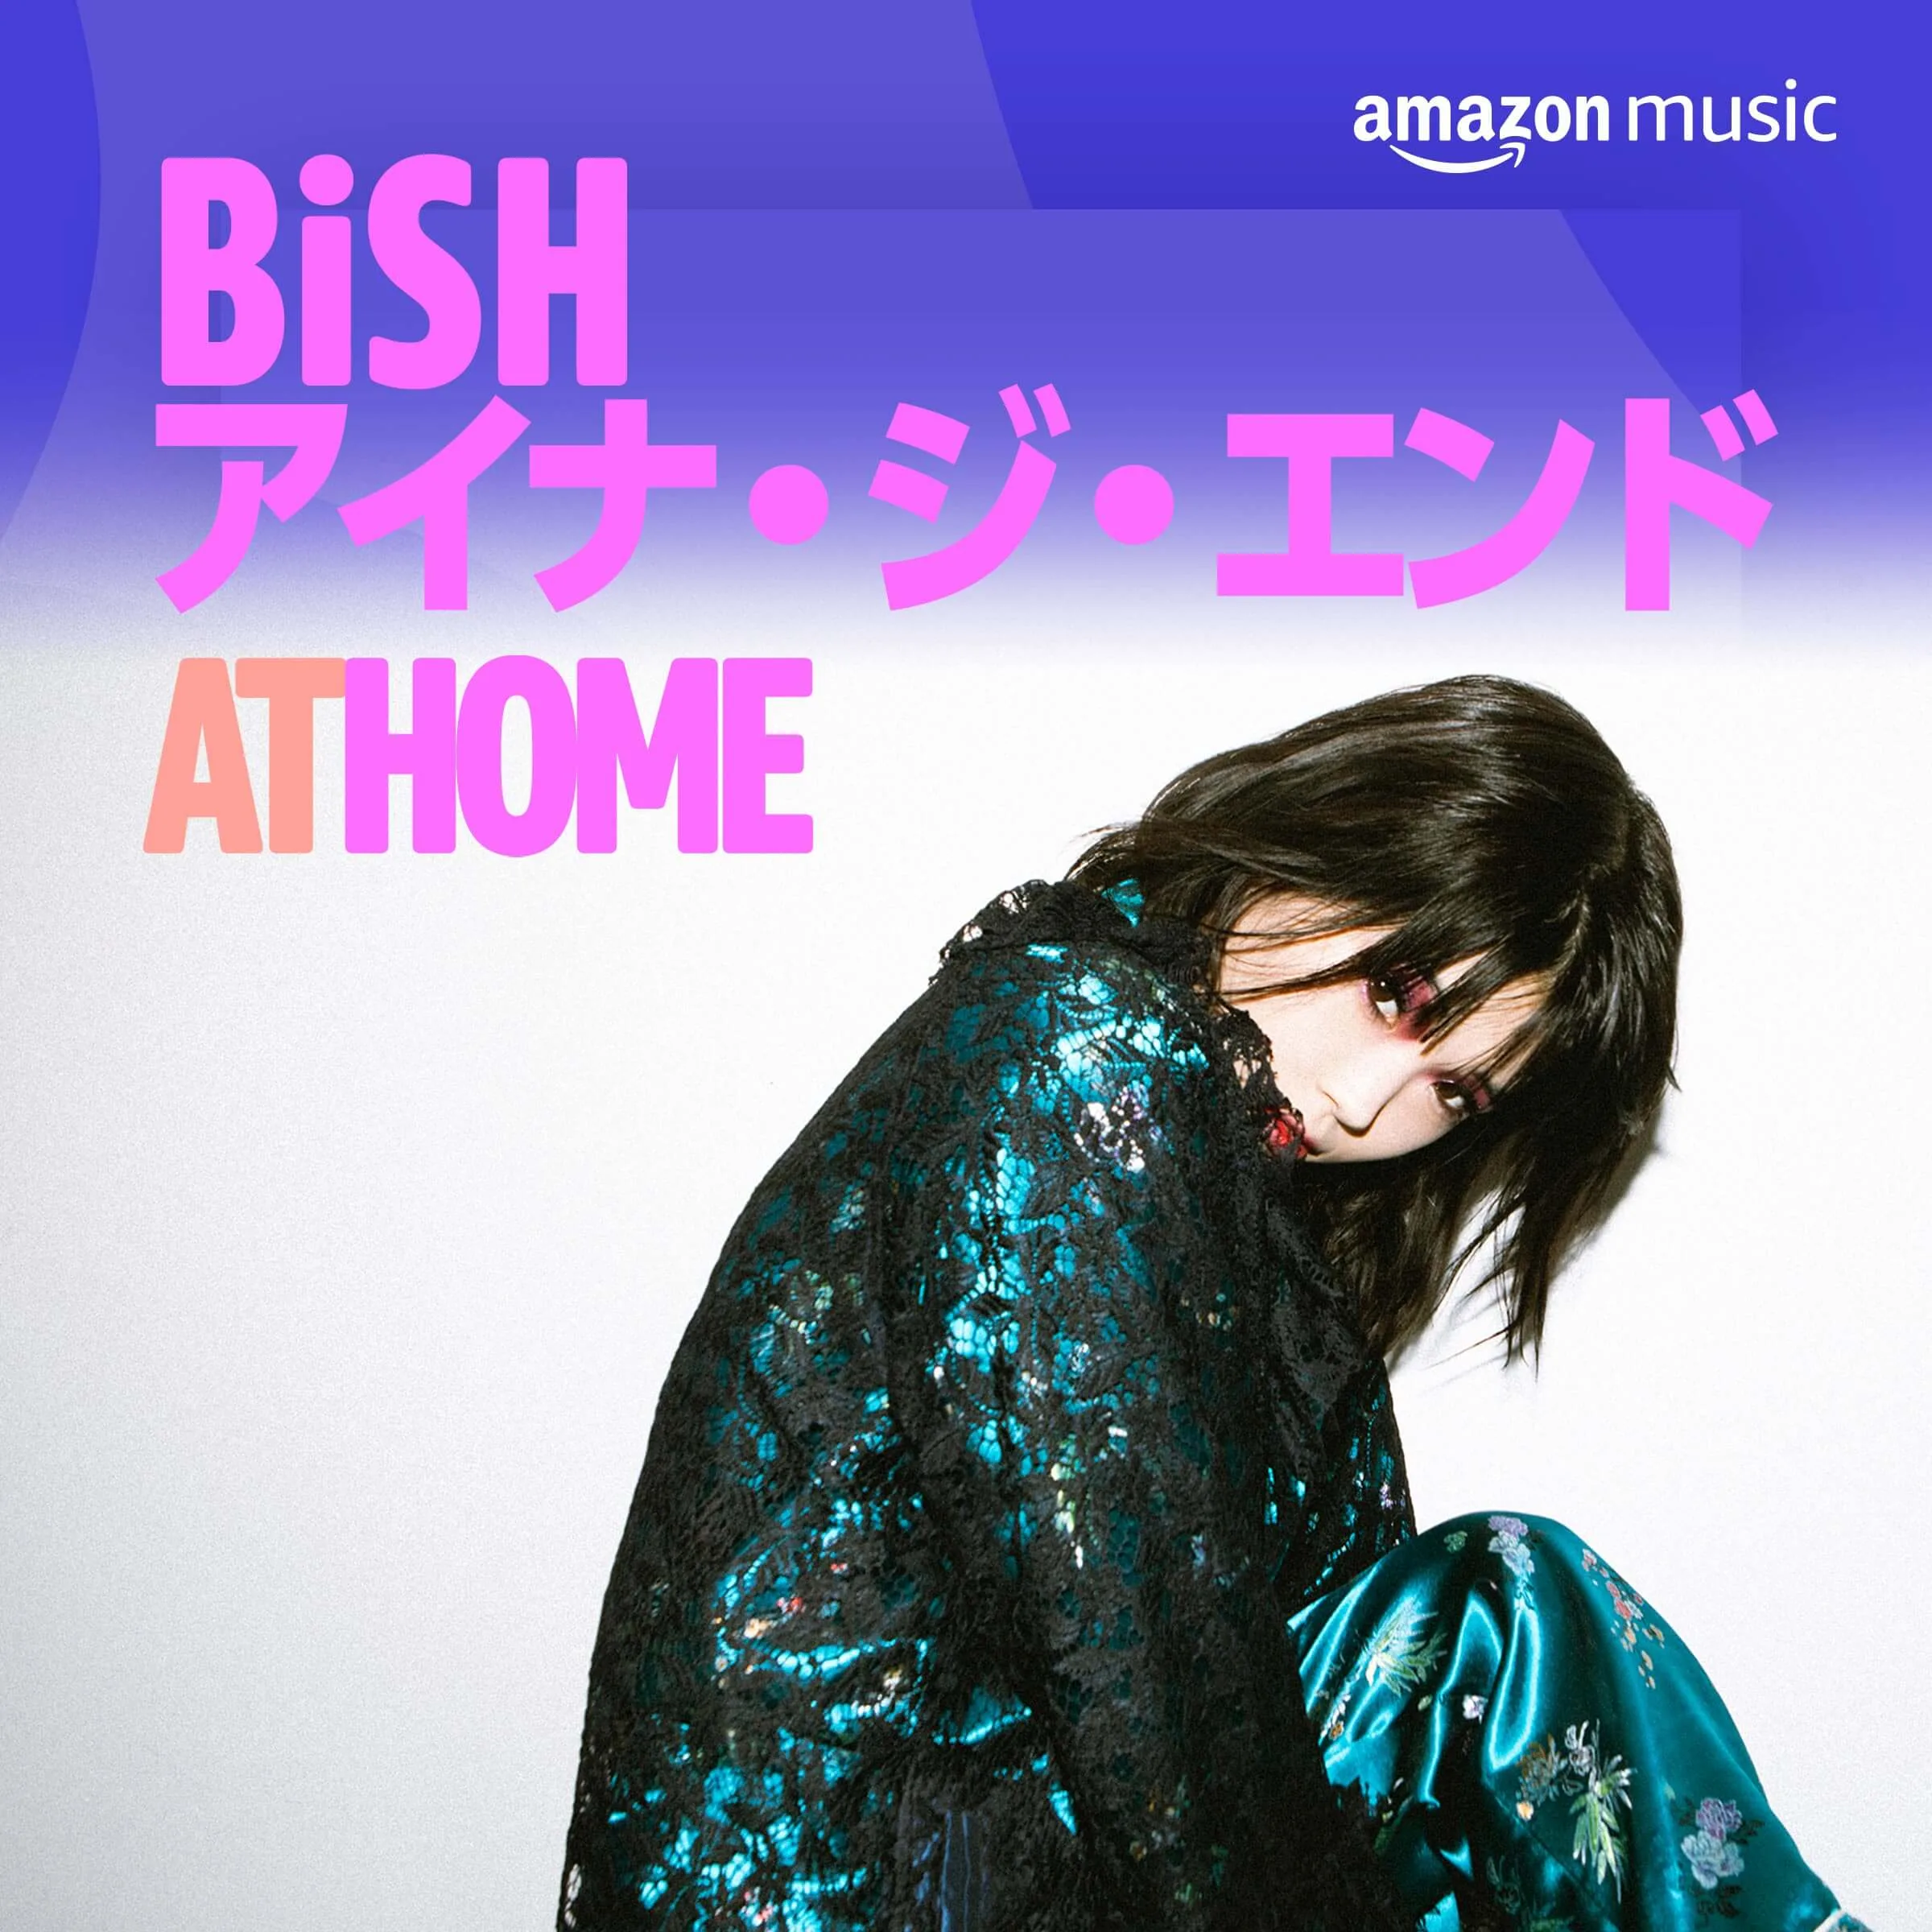 Amazon Music Unlimitedにてプレイリストを公開したBiSH